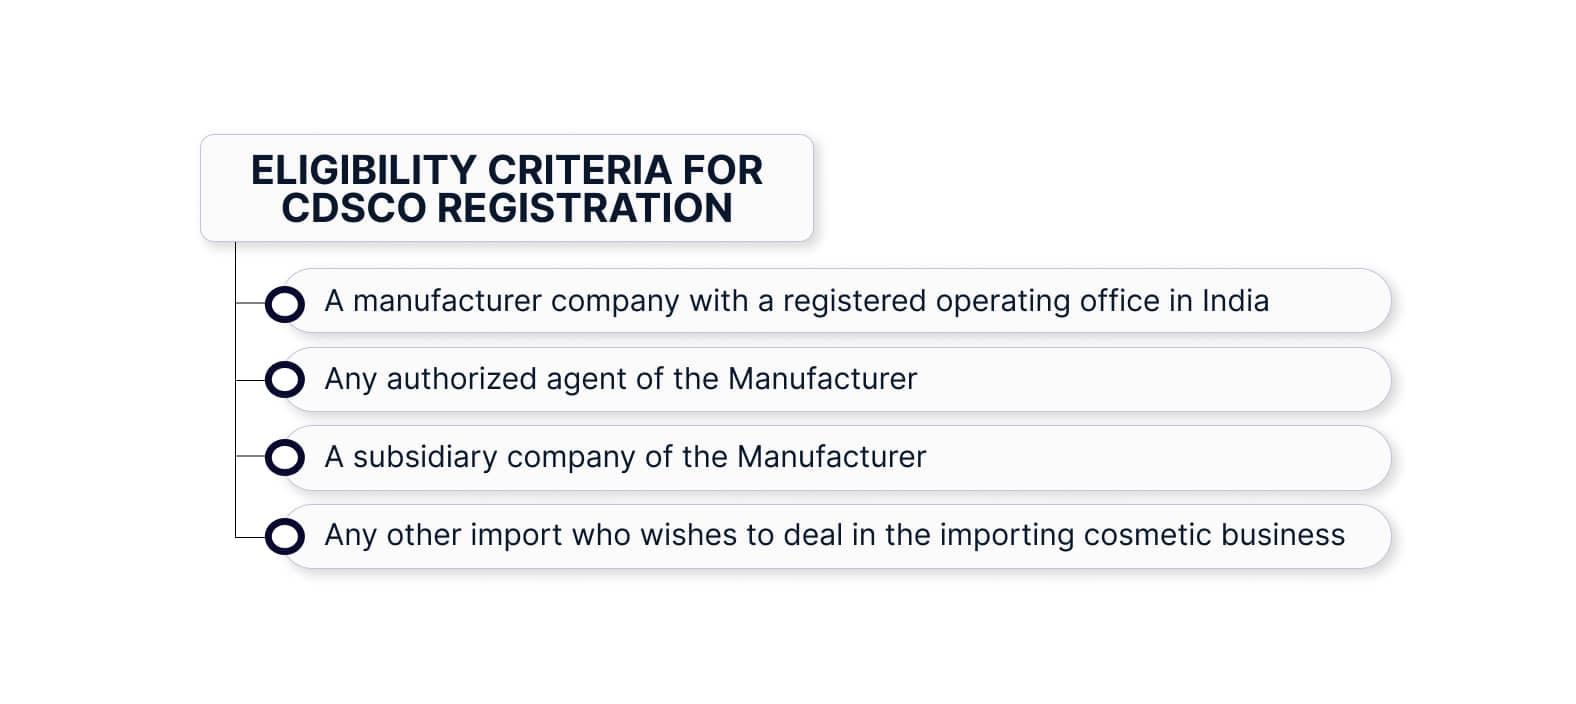 Eligibility criteria for CDSCO Registration in India